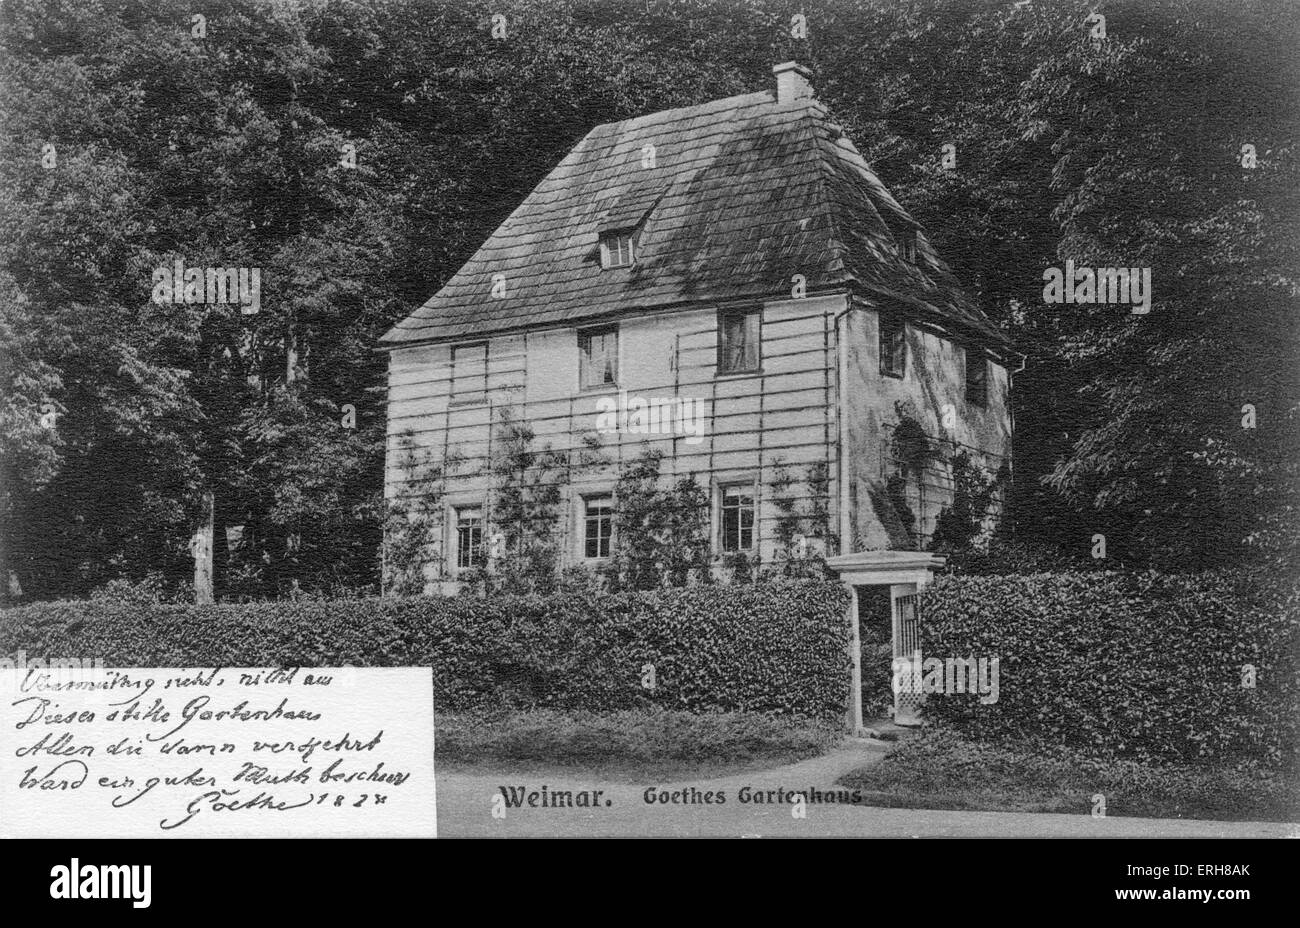 Goethes Gartenhaus, Weimar. Johann Wolfgang von Goethe, deutscher Schriftsteller und Philosoph: 28. August 1749 – 22. März 1832. Stockfoto